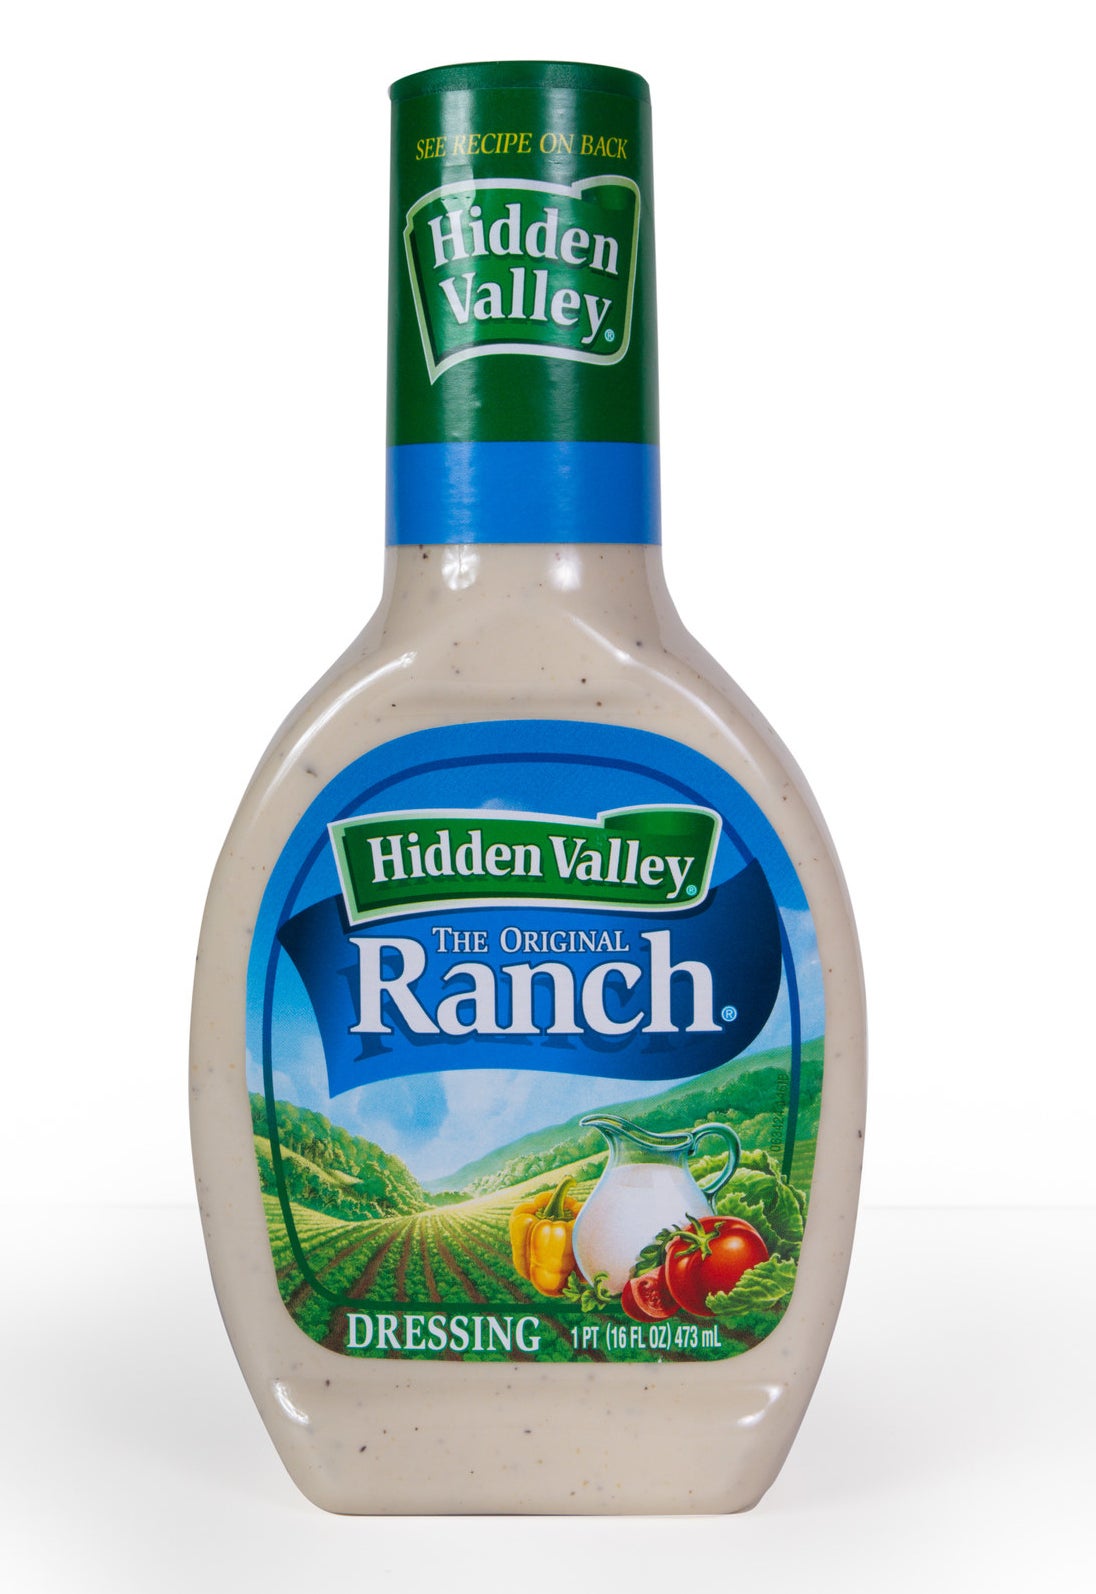 A bottle of Hidden Valley ranch dressing